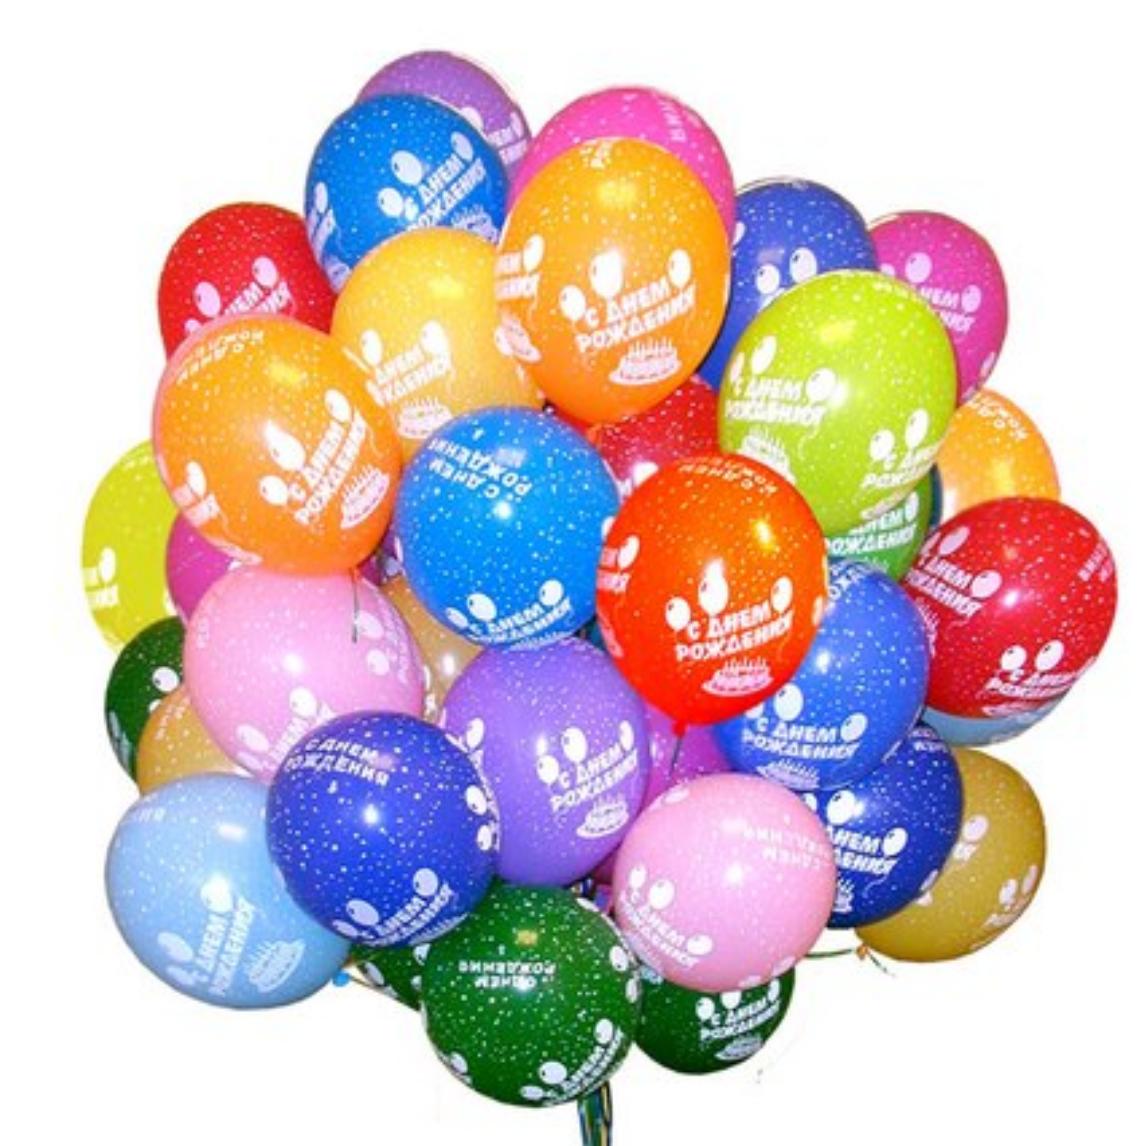 Заказать шарики с доставкой в москве недорого. Воздушные шары. С днём рождения шарики. Воздушный шарик. Шары разноцветные с днем рождения.